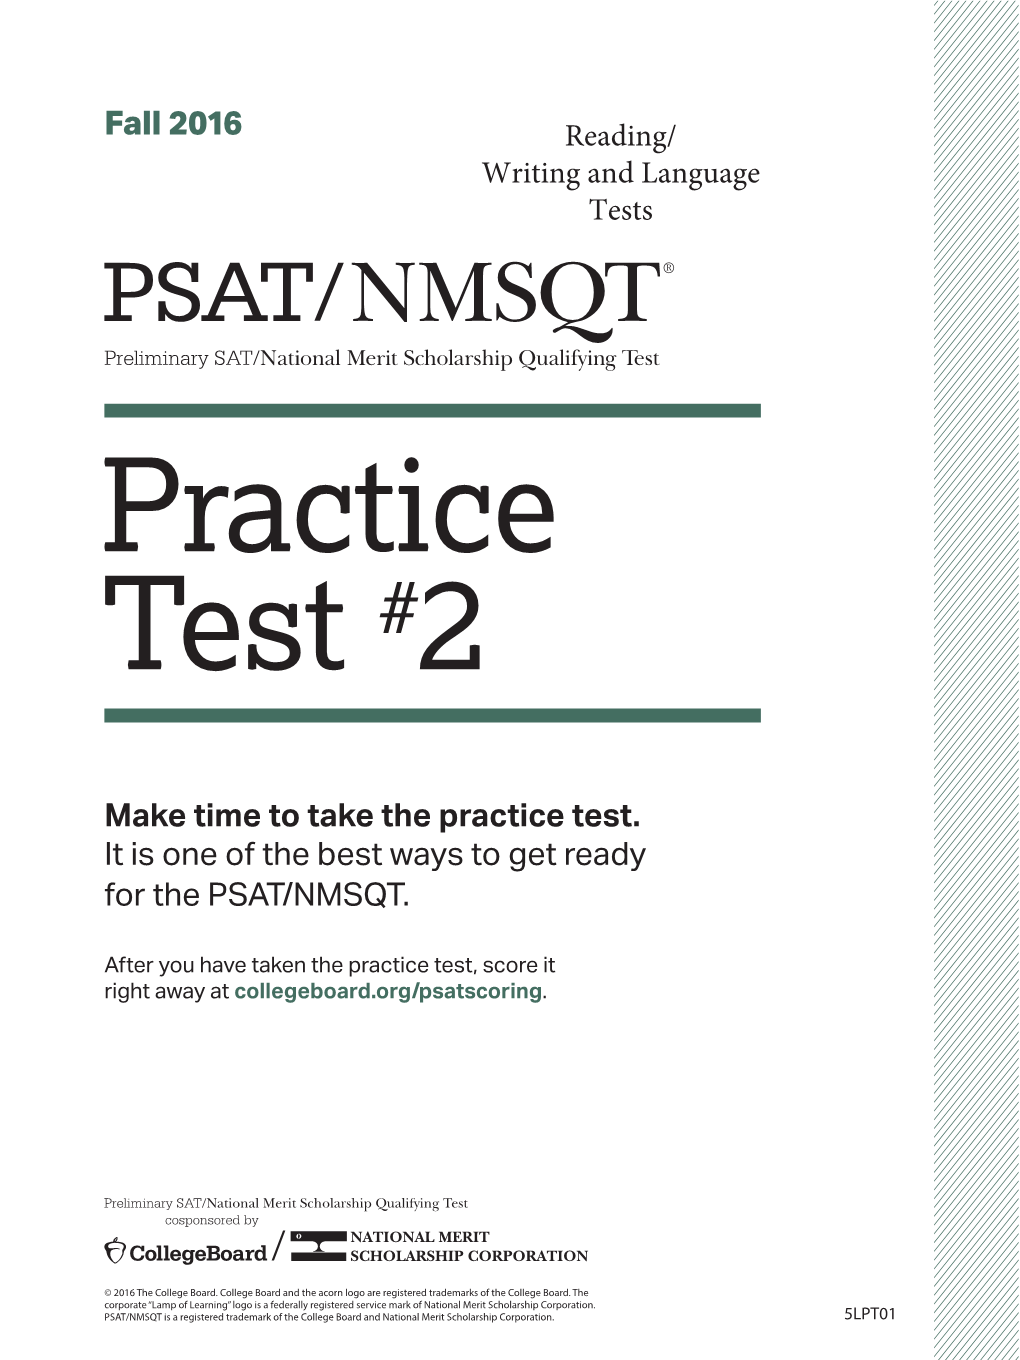 PSAT/NMSQT Practice Test #2 | SAT Suite of Assessments